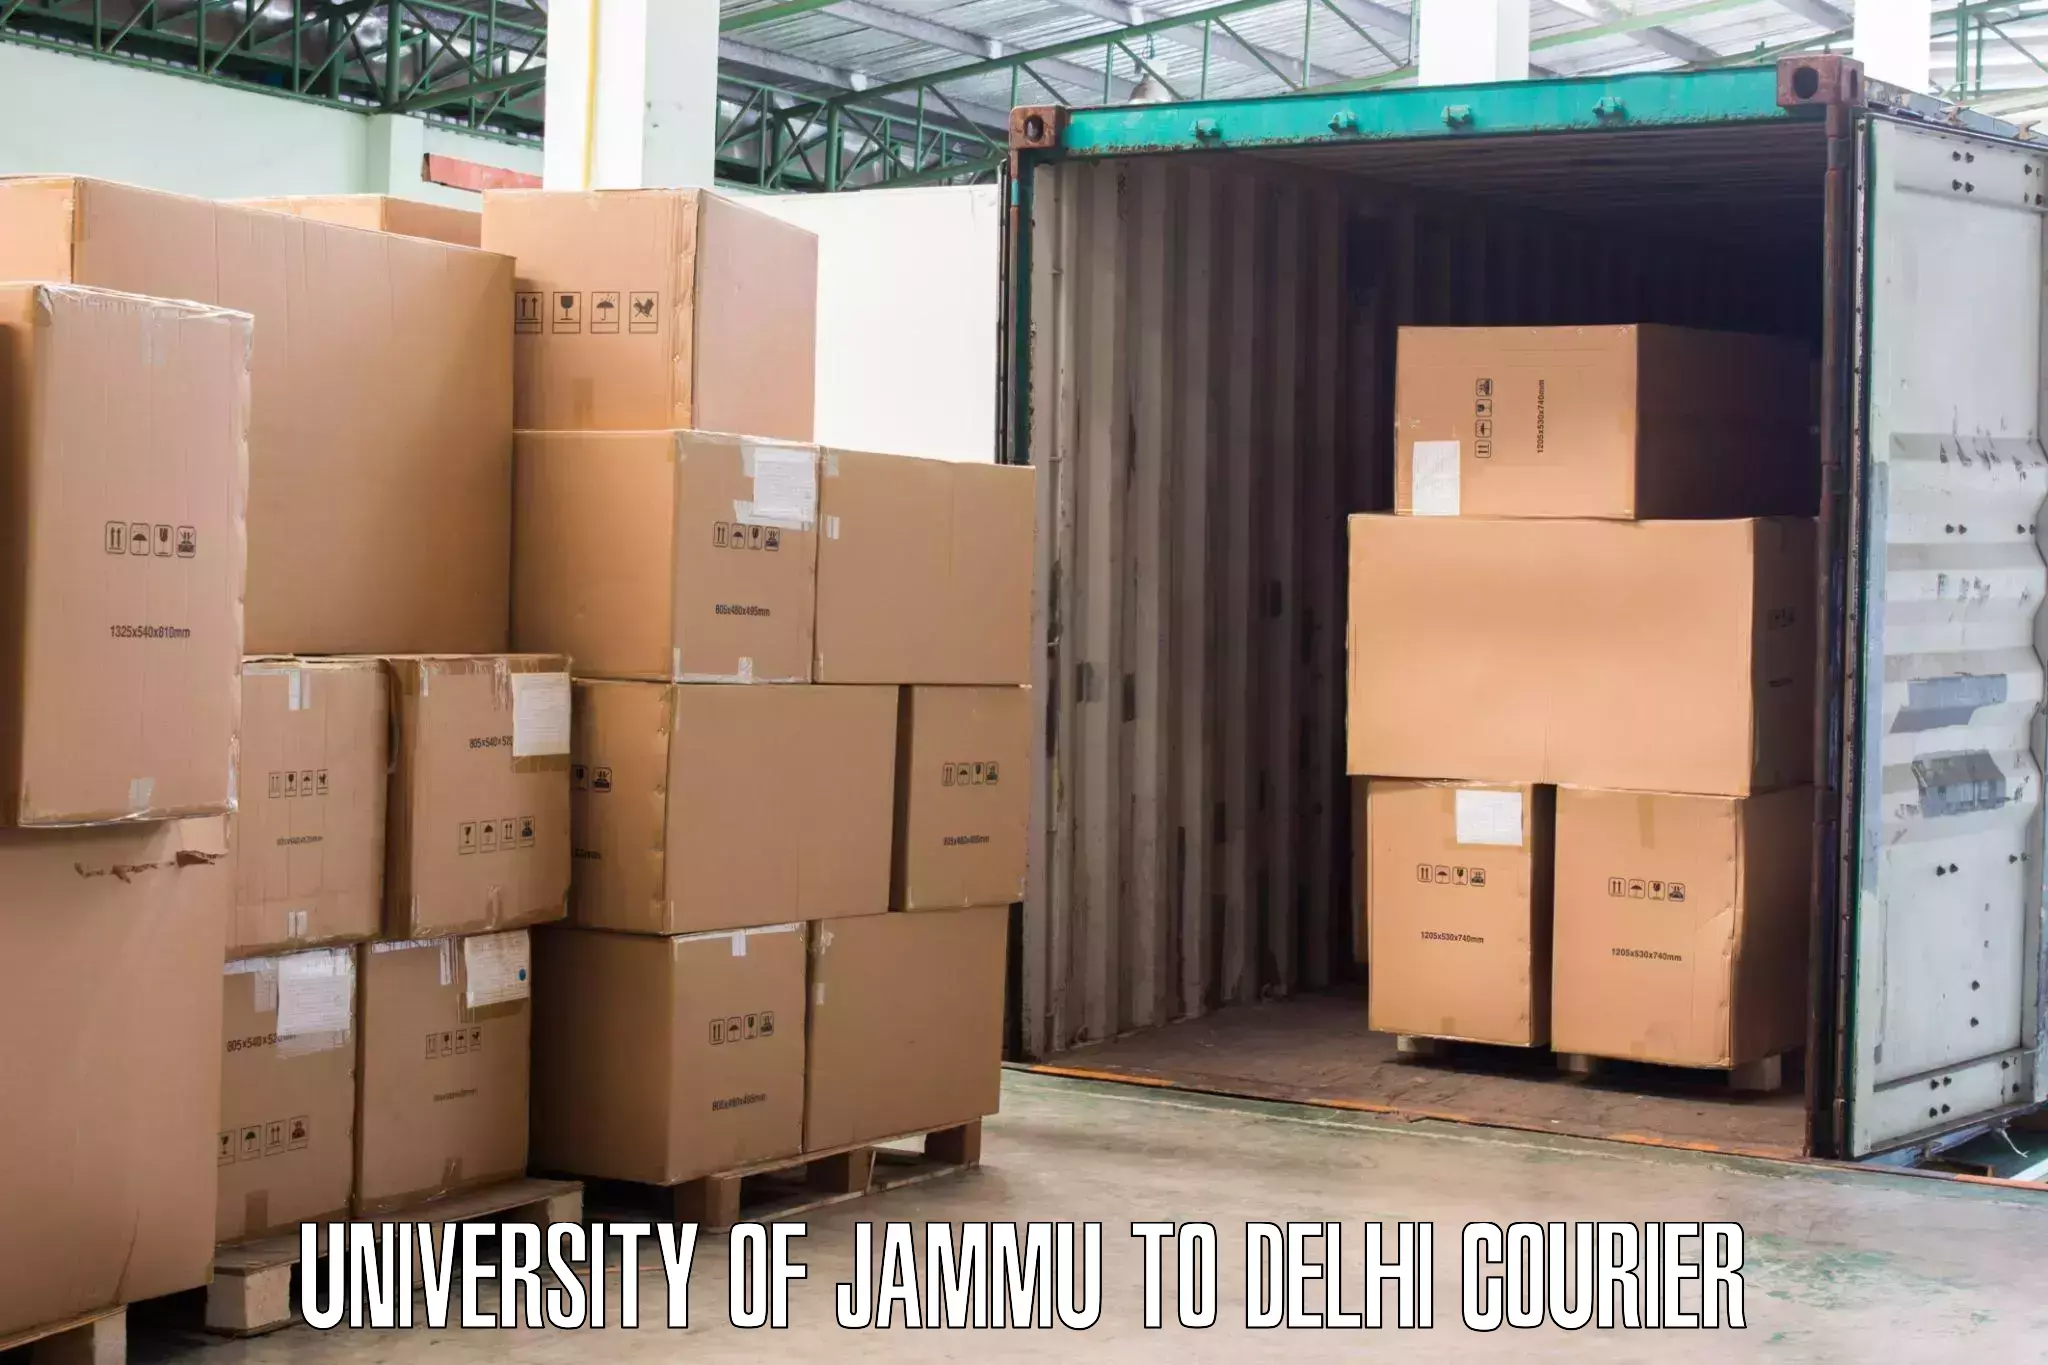 Professional moving company University of Jammu to Sansad Marg